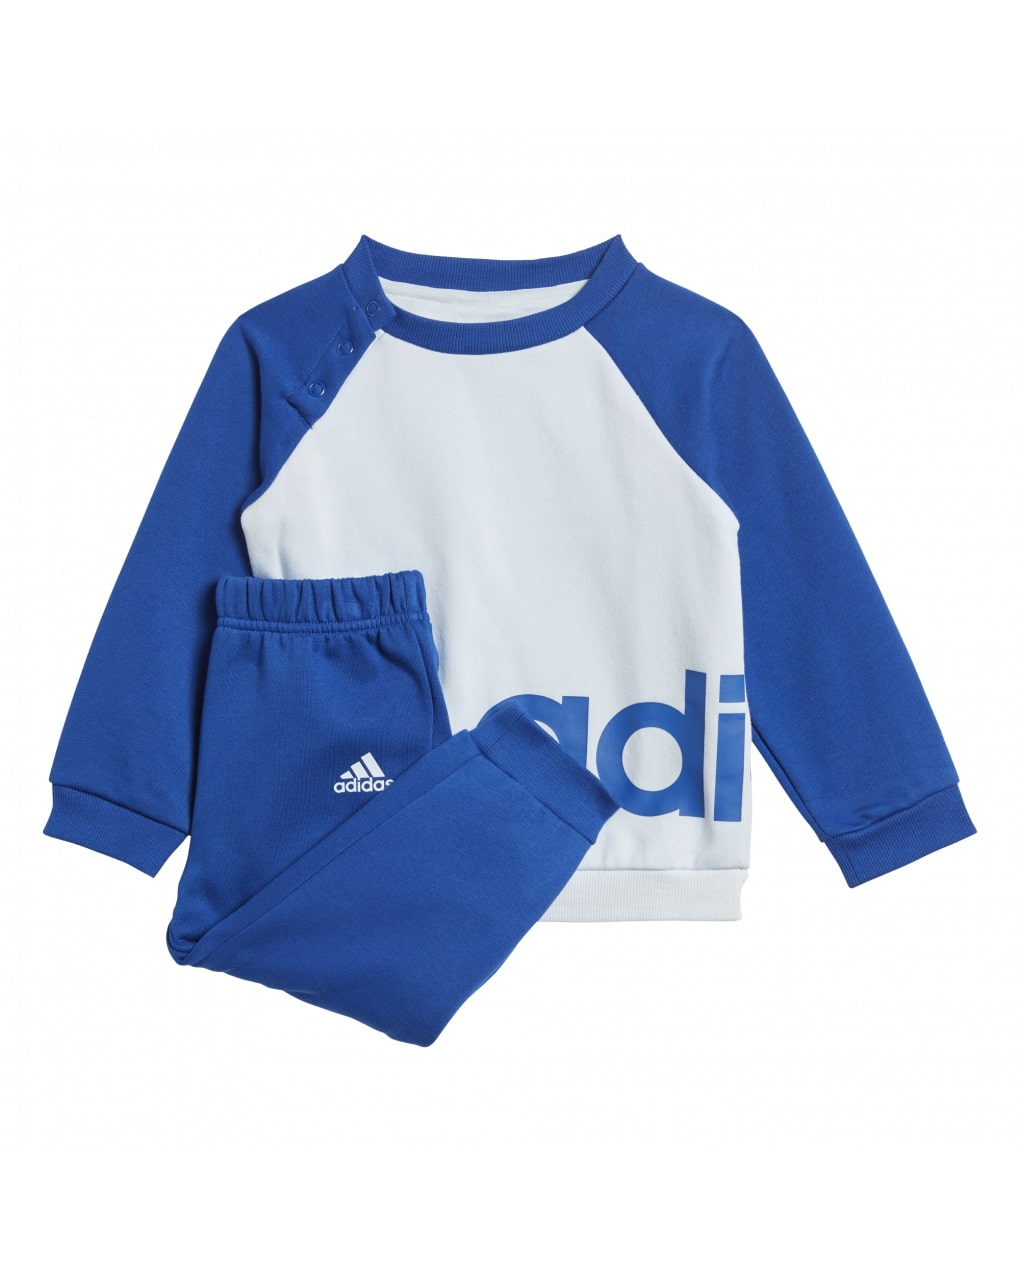 Adidas σετ φόρμας μπλούζα και παντελόνι για αγόρι